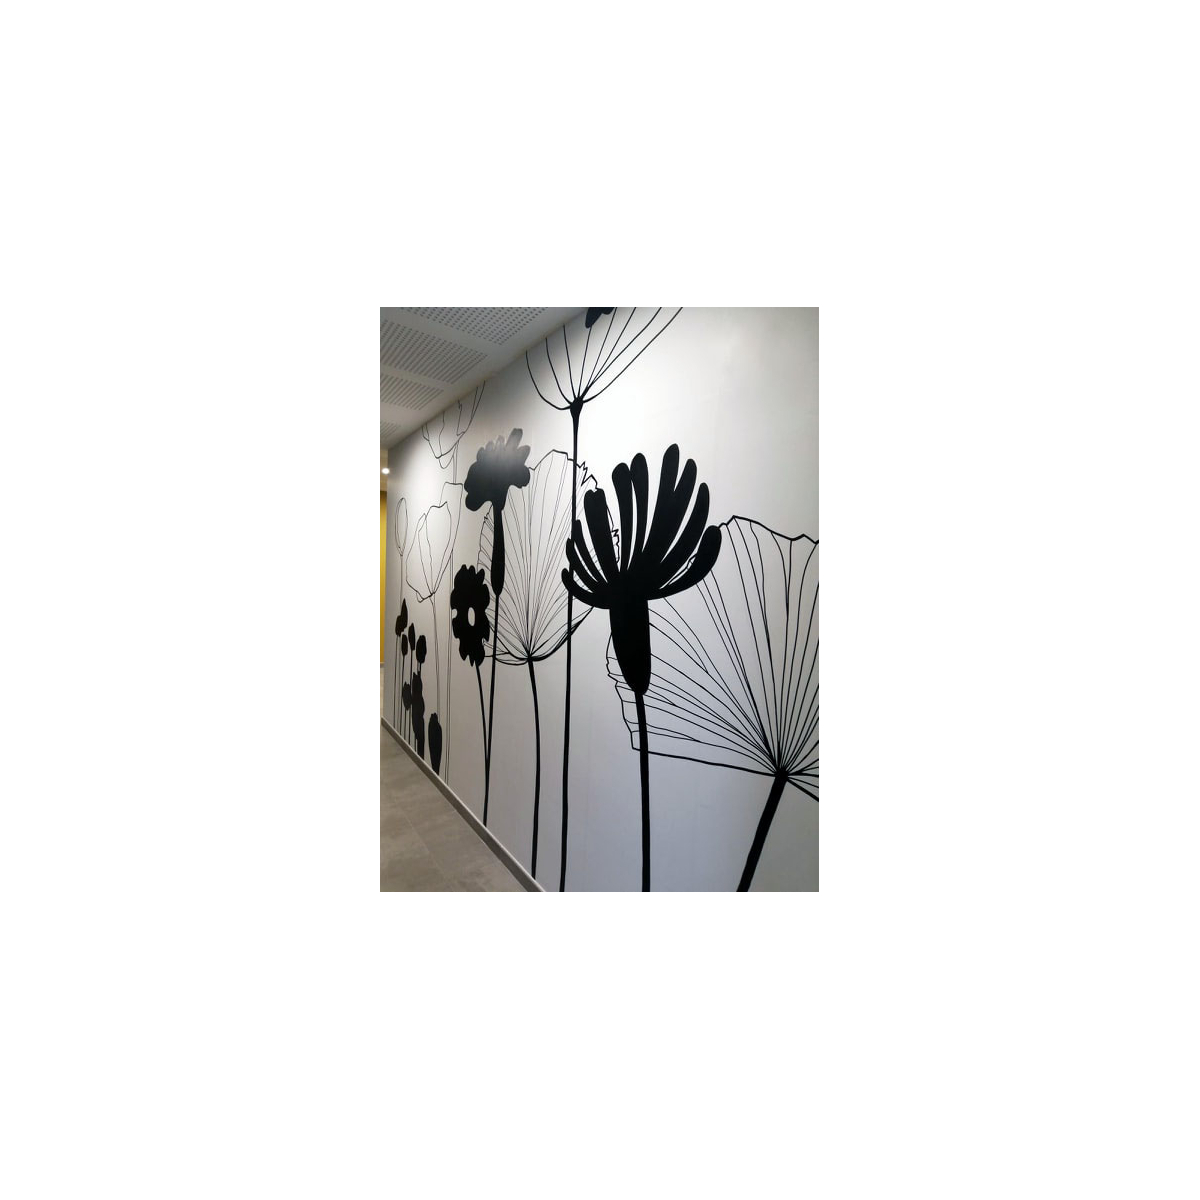 Affresco grafico a parete con fiori - Monocromo